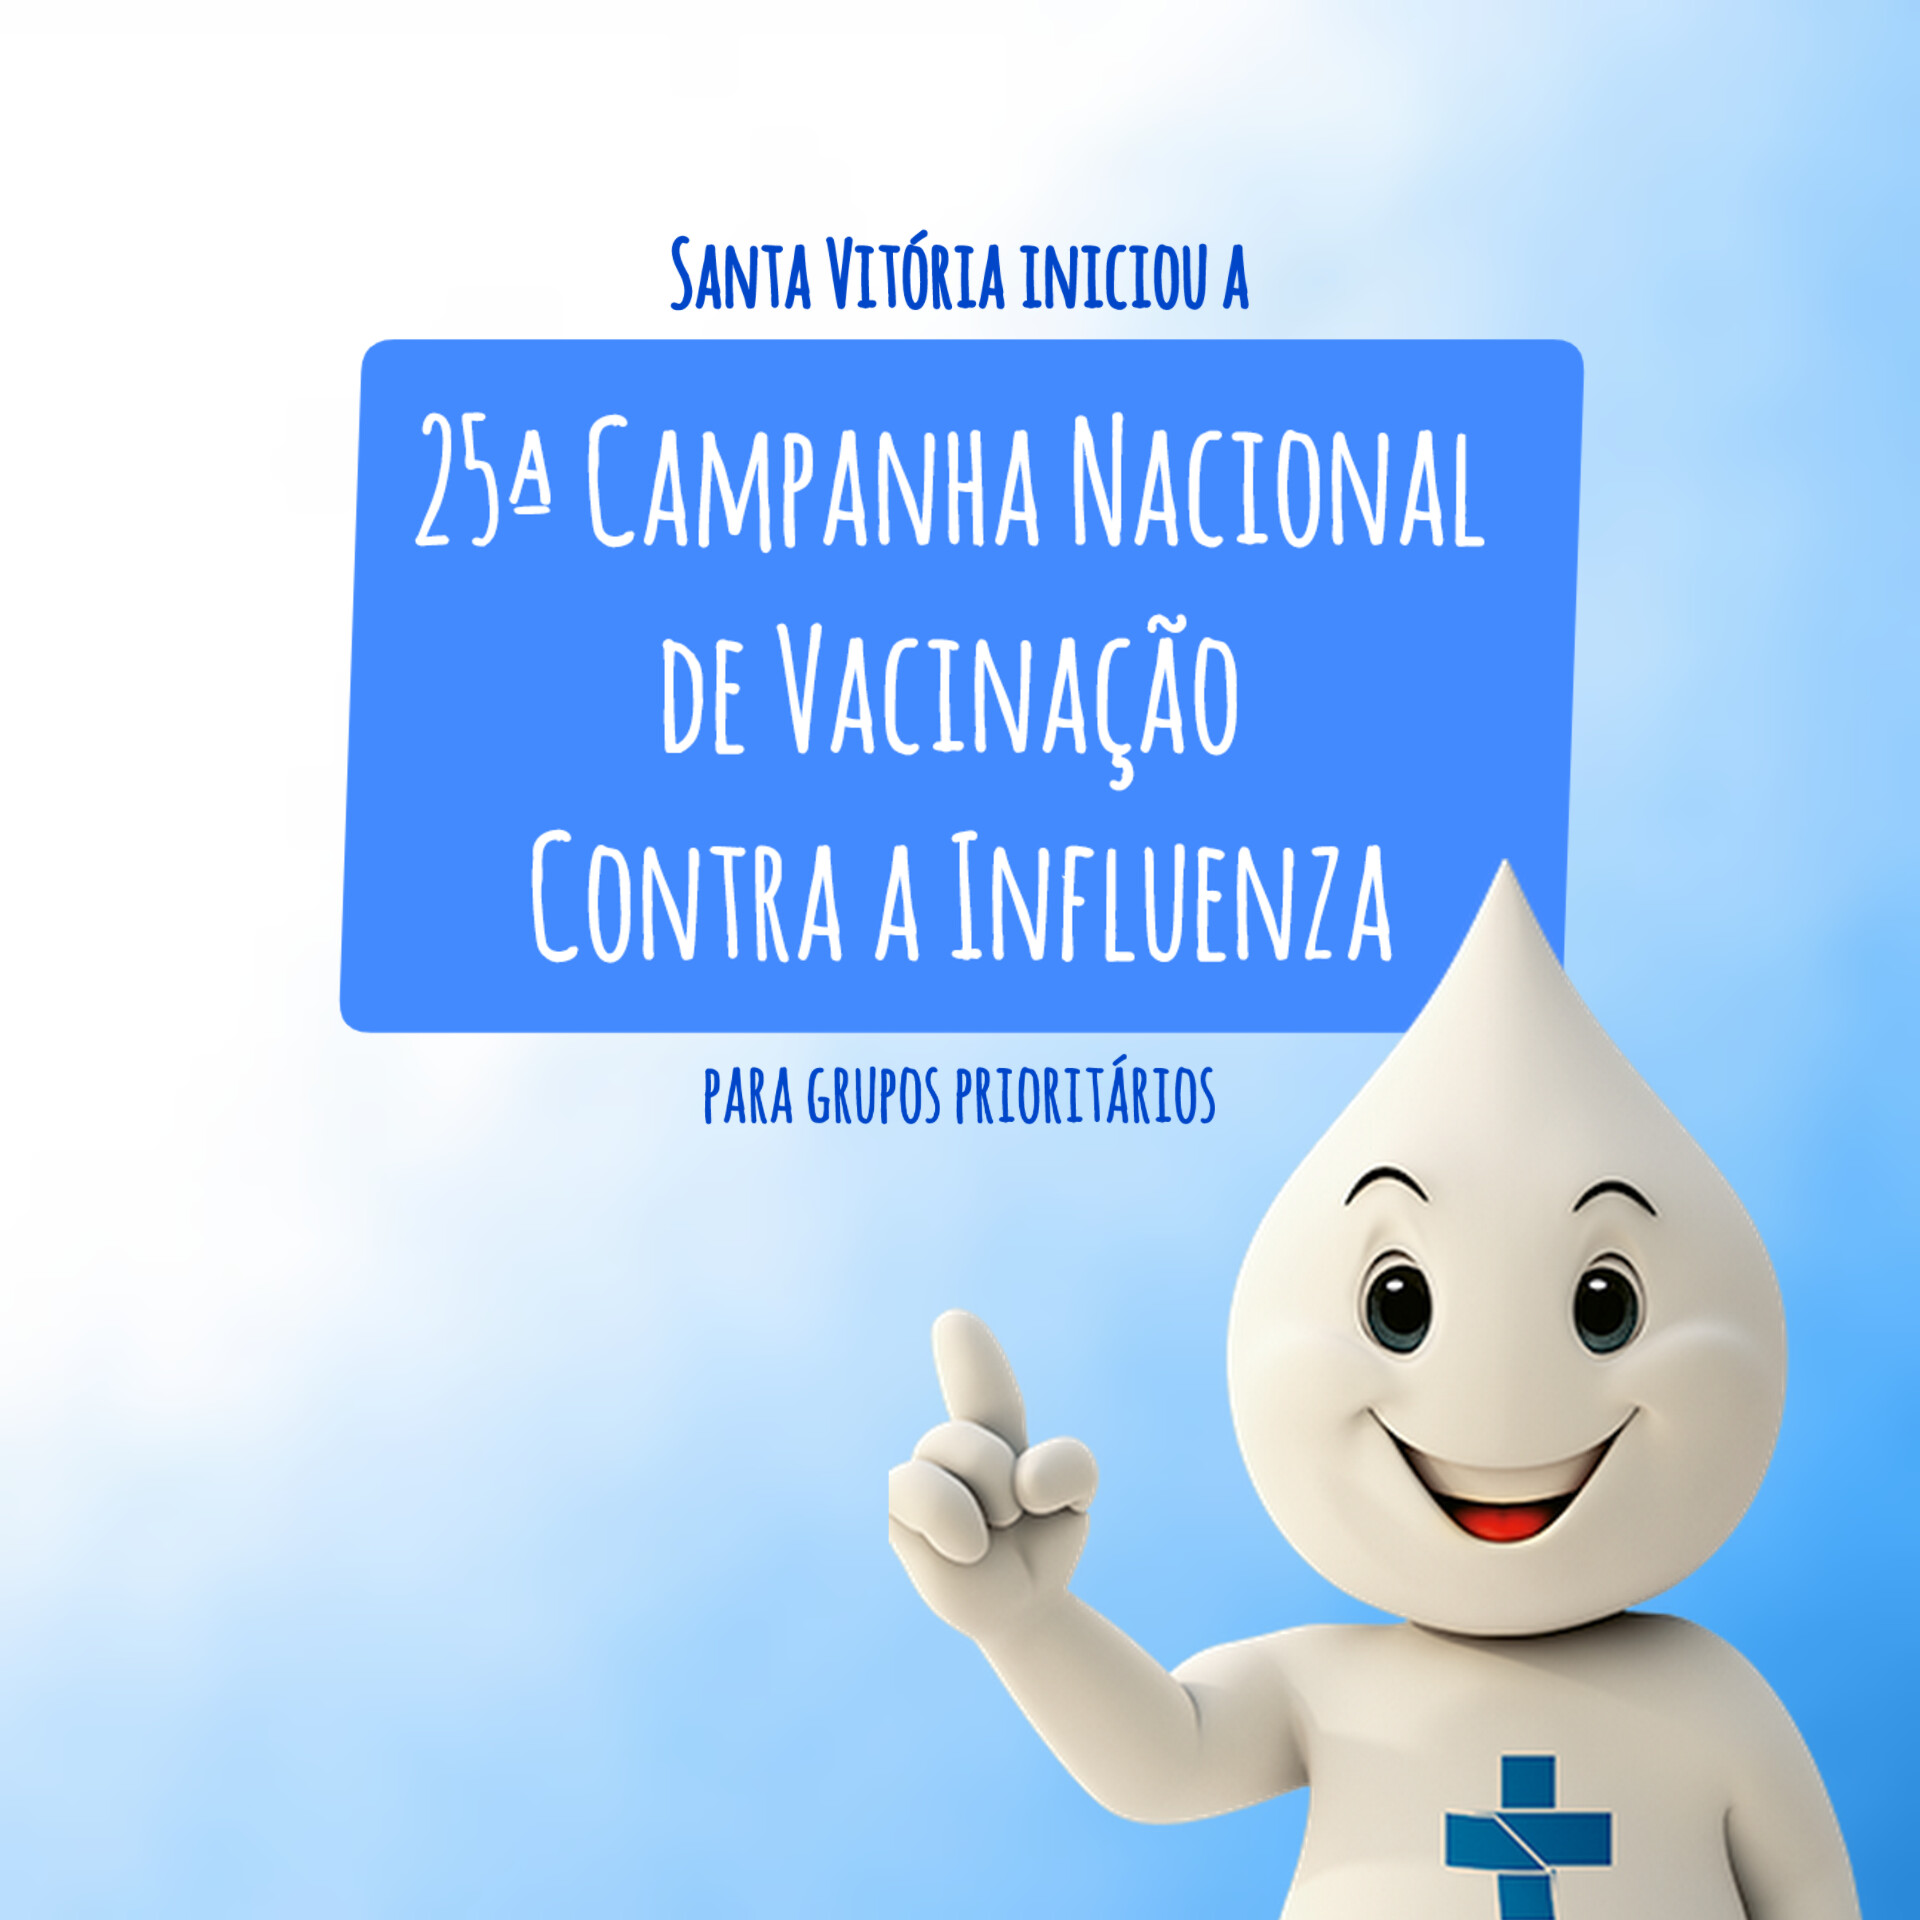 Santa Vitória iniciou a 25ª Campanha Nacional de Vacinação Contra a Influenza para grupos prioritários